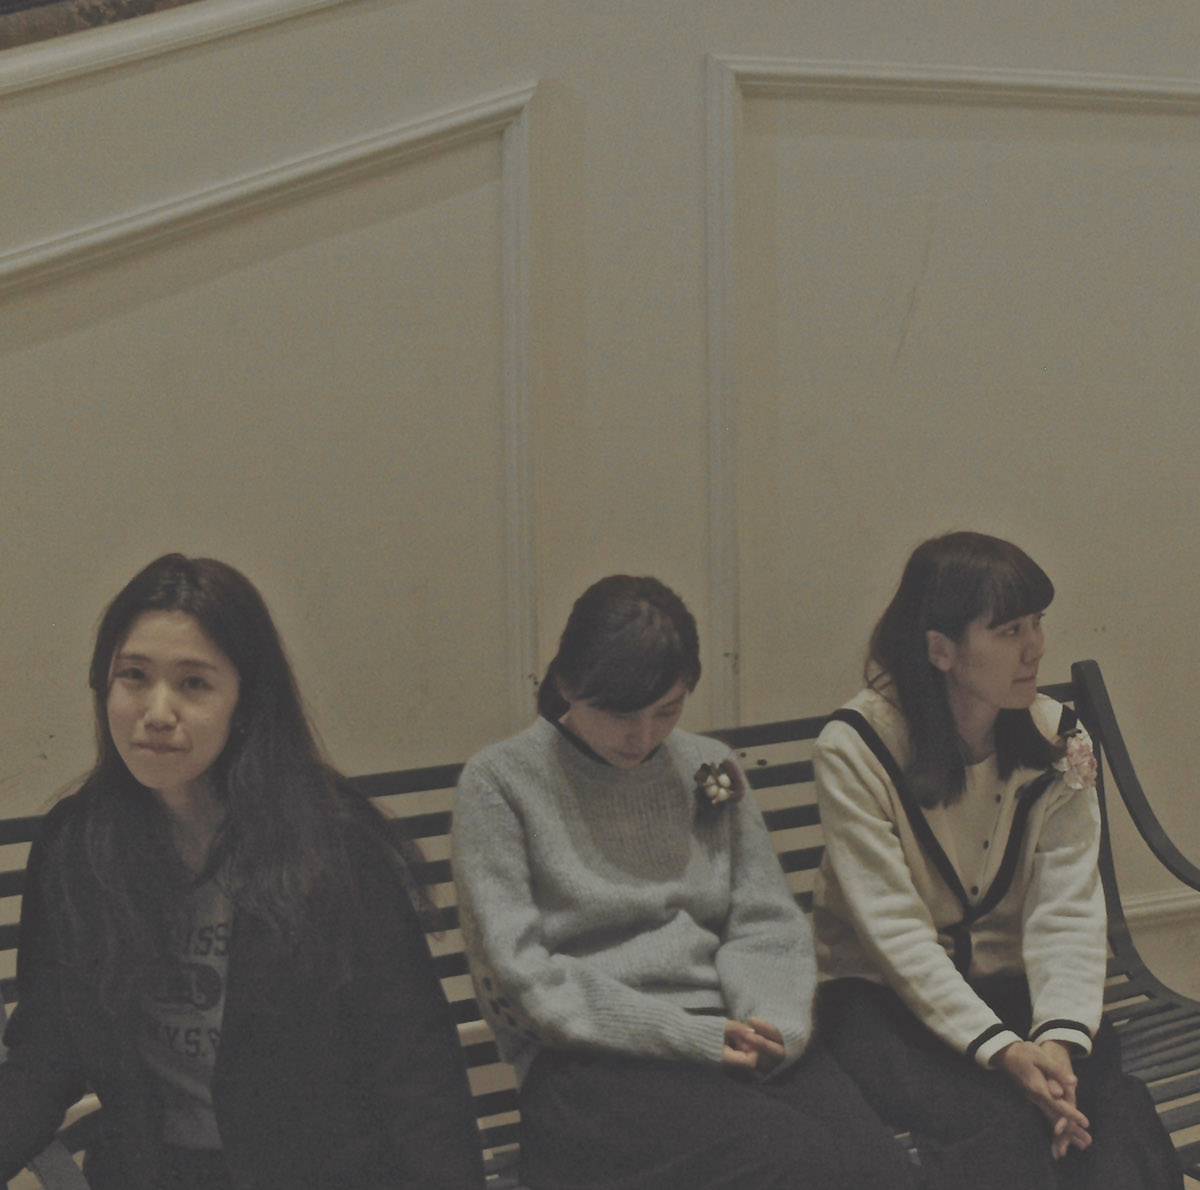 女の子3人組スリーピース・バンド、SaToAが待望の全国流通1stミニ・アルバムをリリース